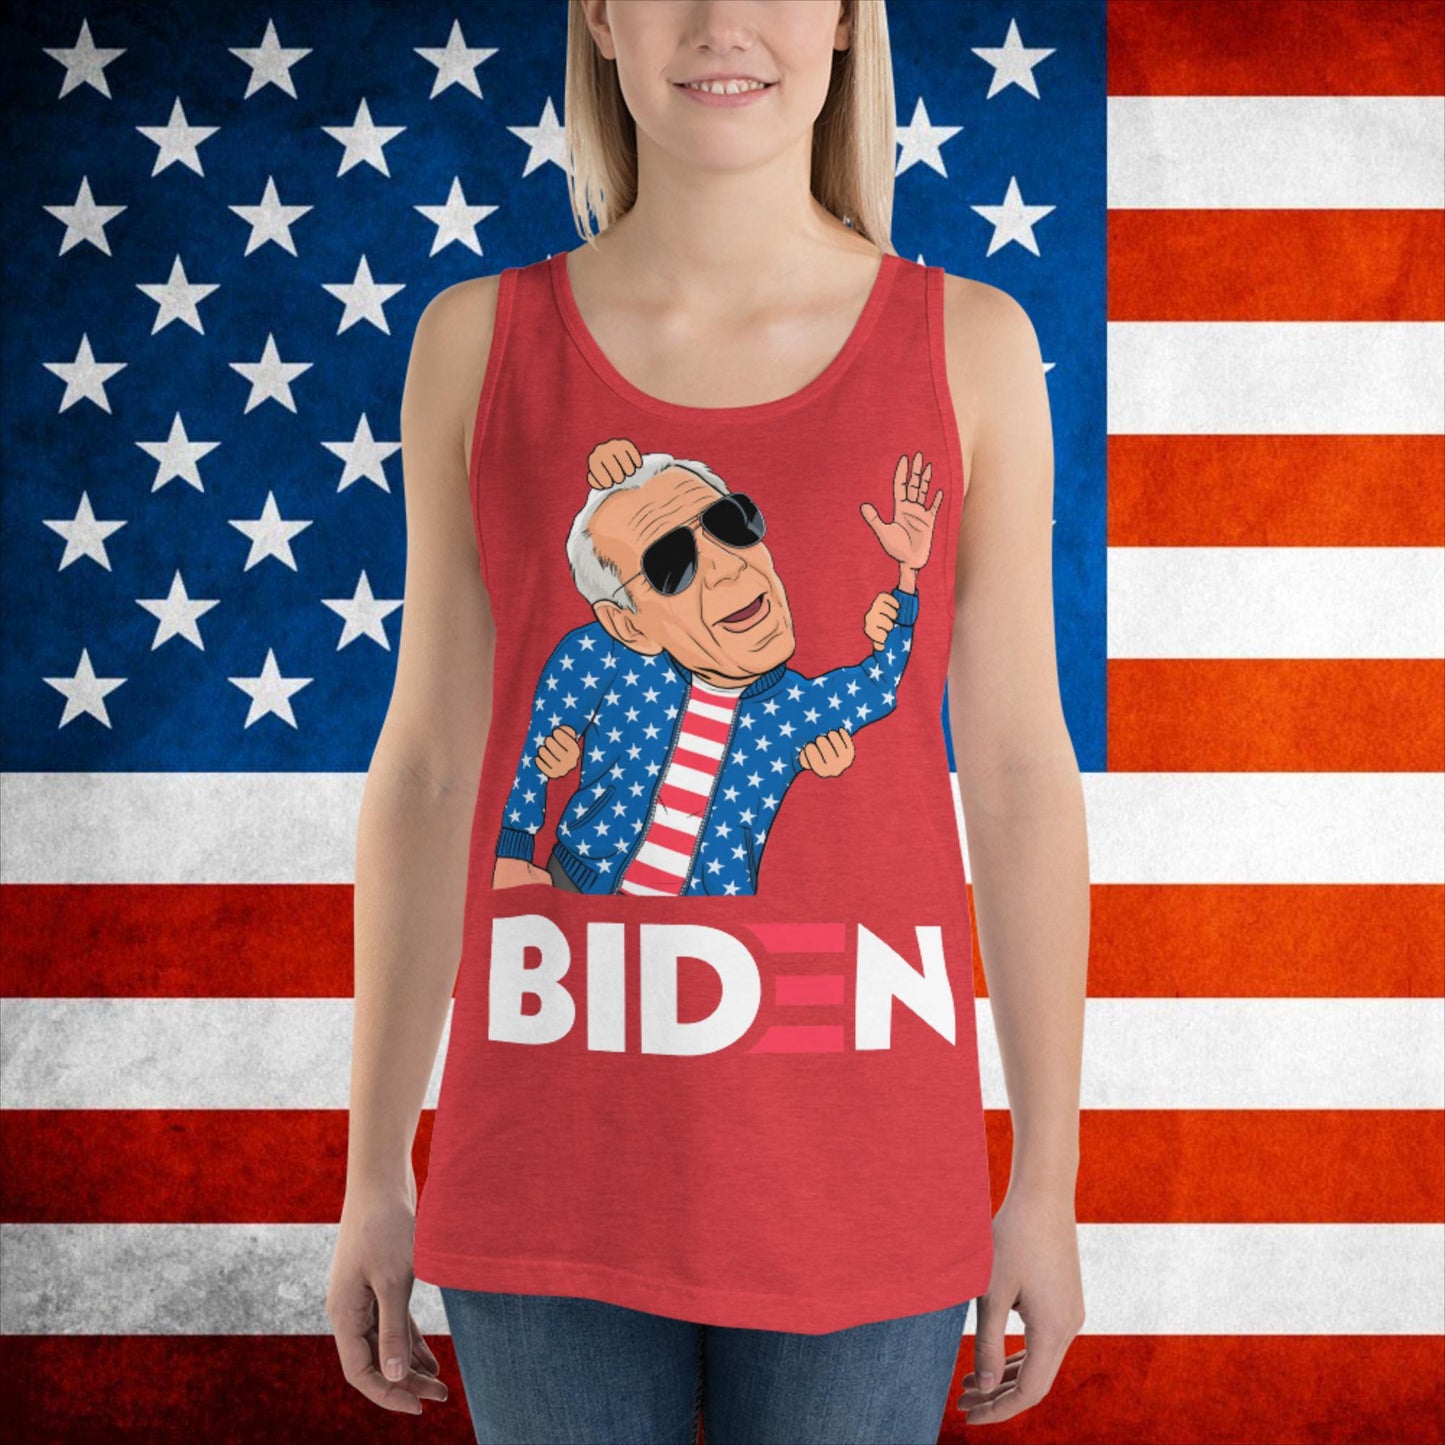 Weekend at Biden's Joe Biden Meme Democrat Republican Trump Gift Biden Gift 90s Vintage Tank Top Next Cult Brand